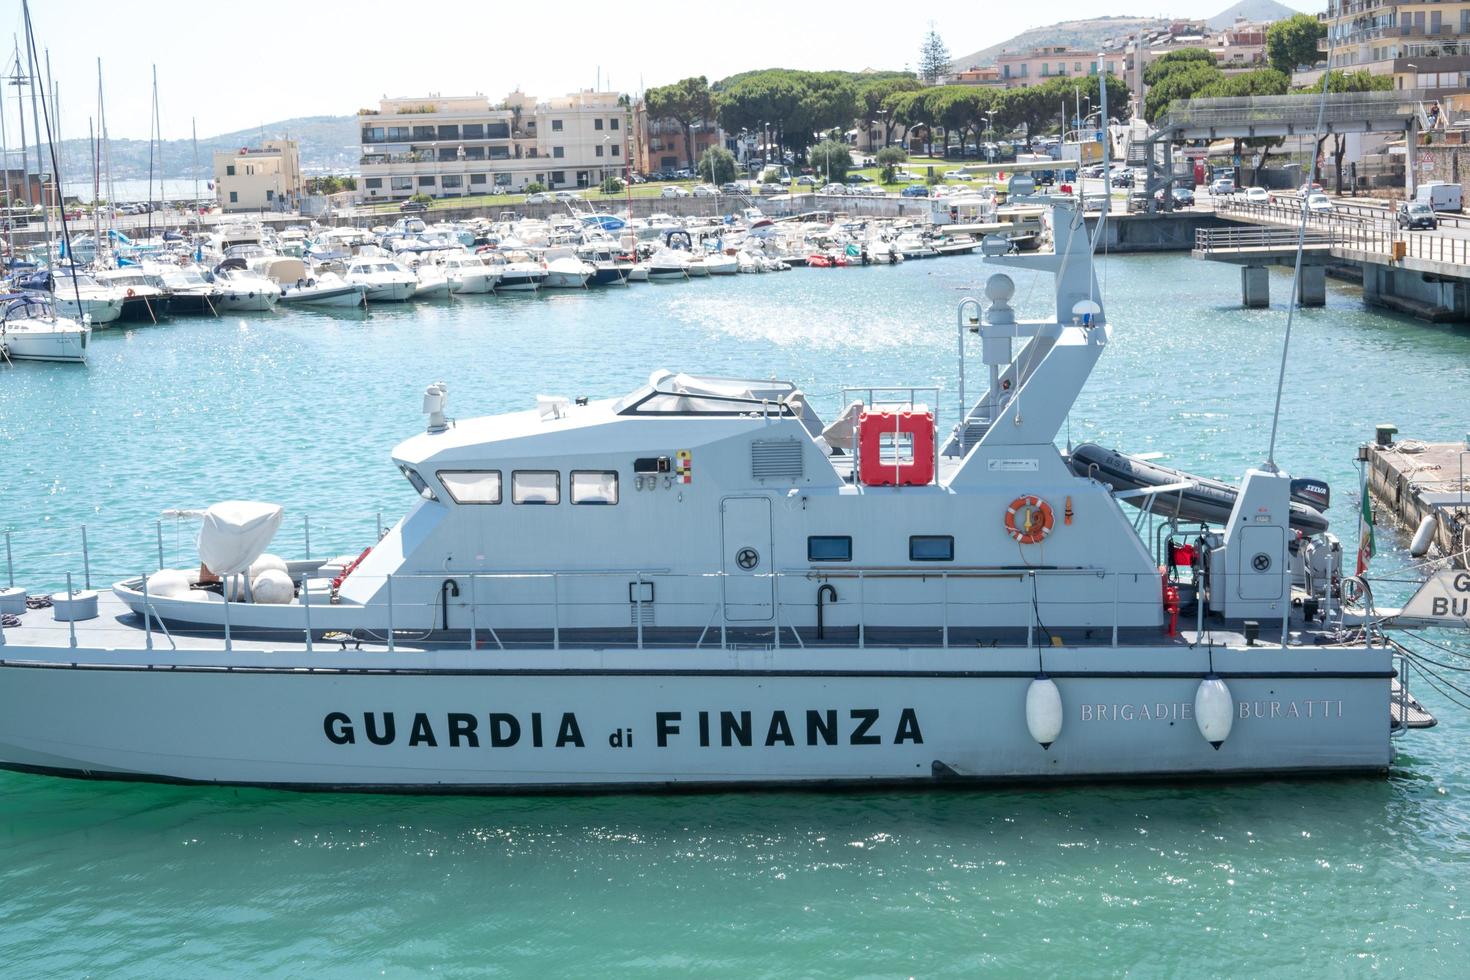 formia, italien, 15. juli 2021 - italienisches patrouillenboot der finanzwache foto